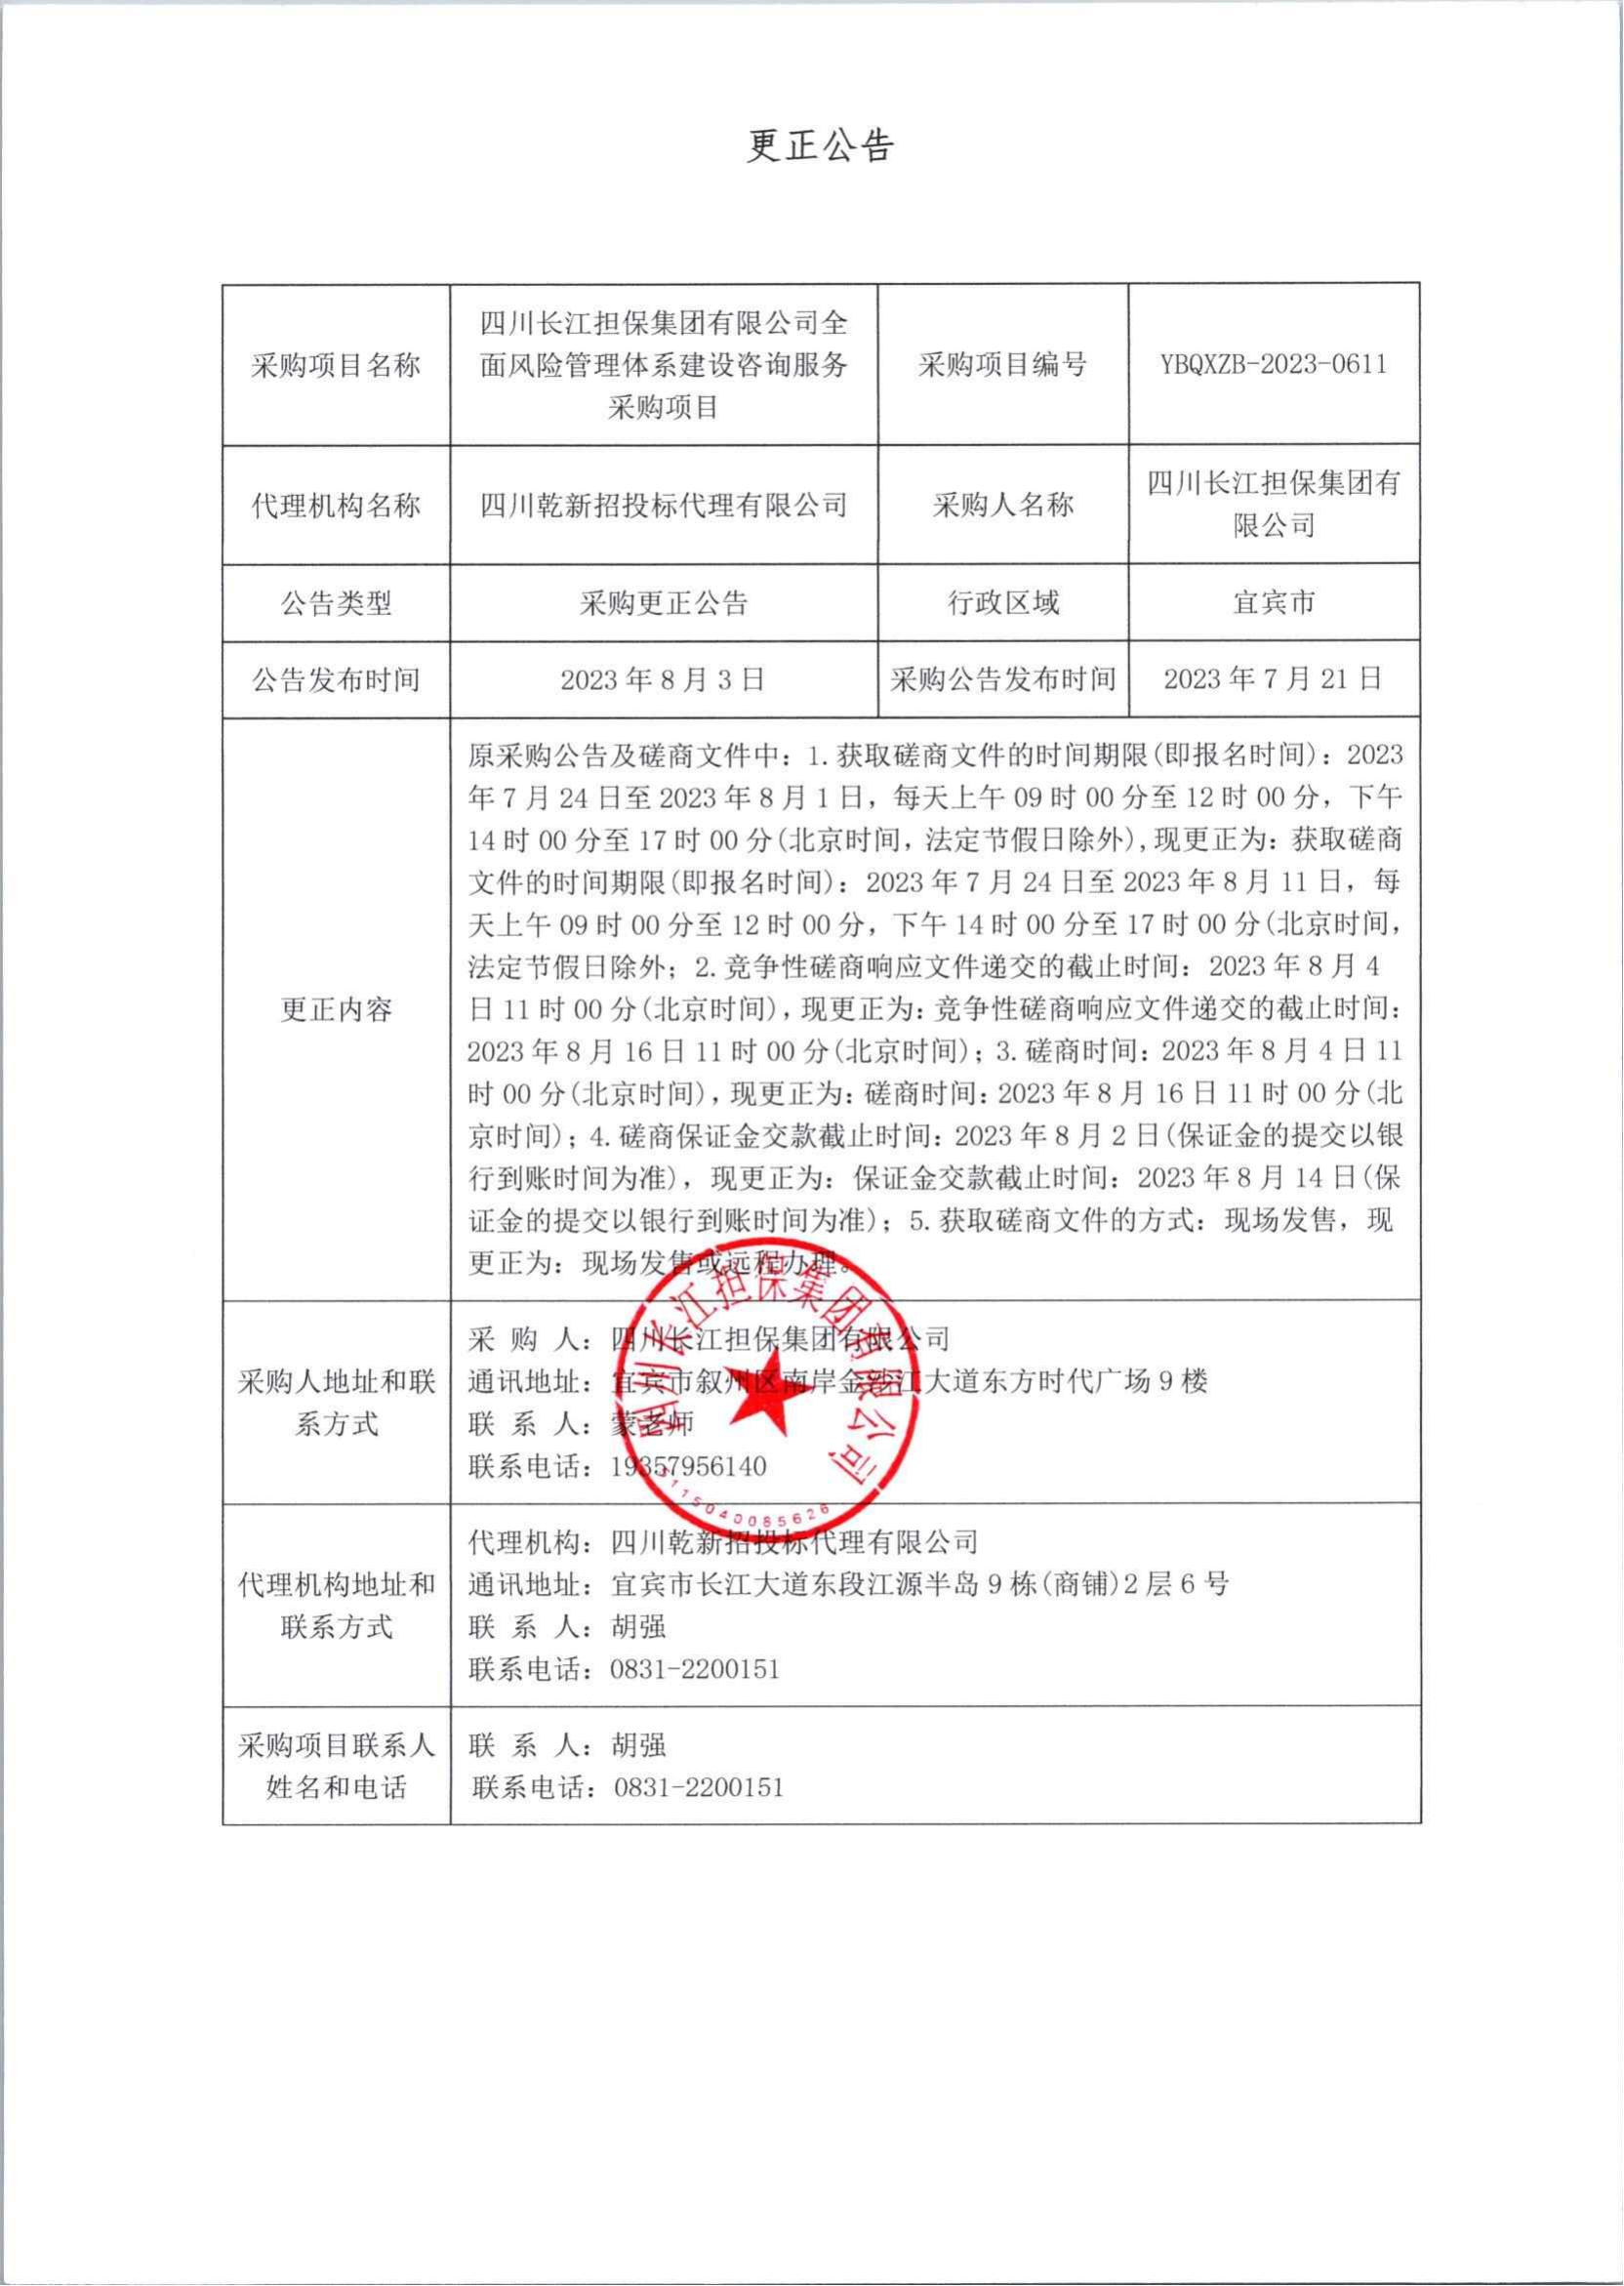 四川长江担保集团有限公司 全面风险管理体系建设咨询服务采购更正公告